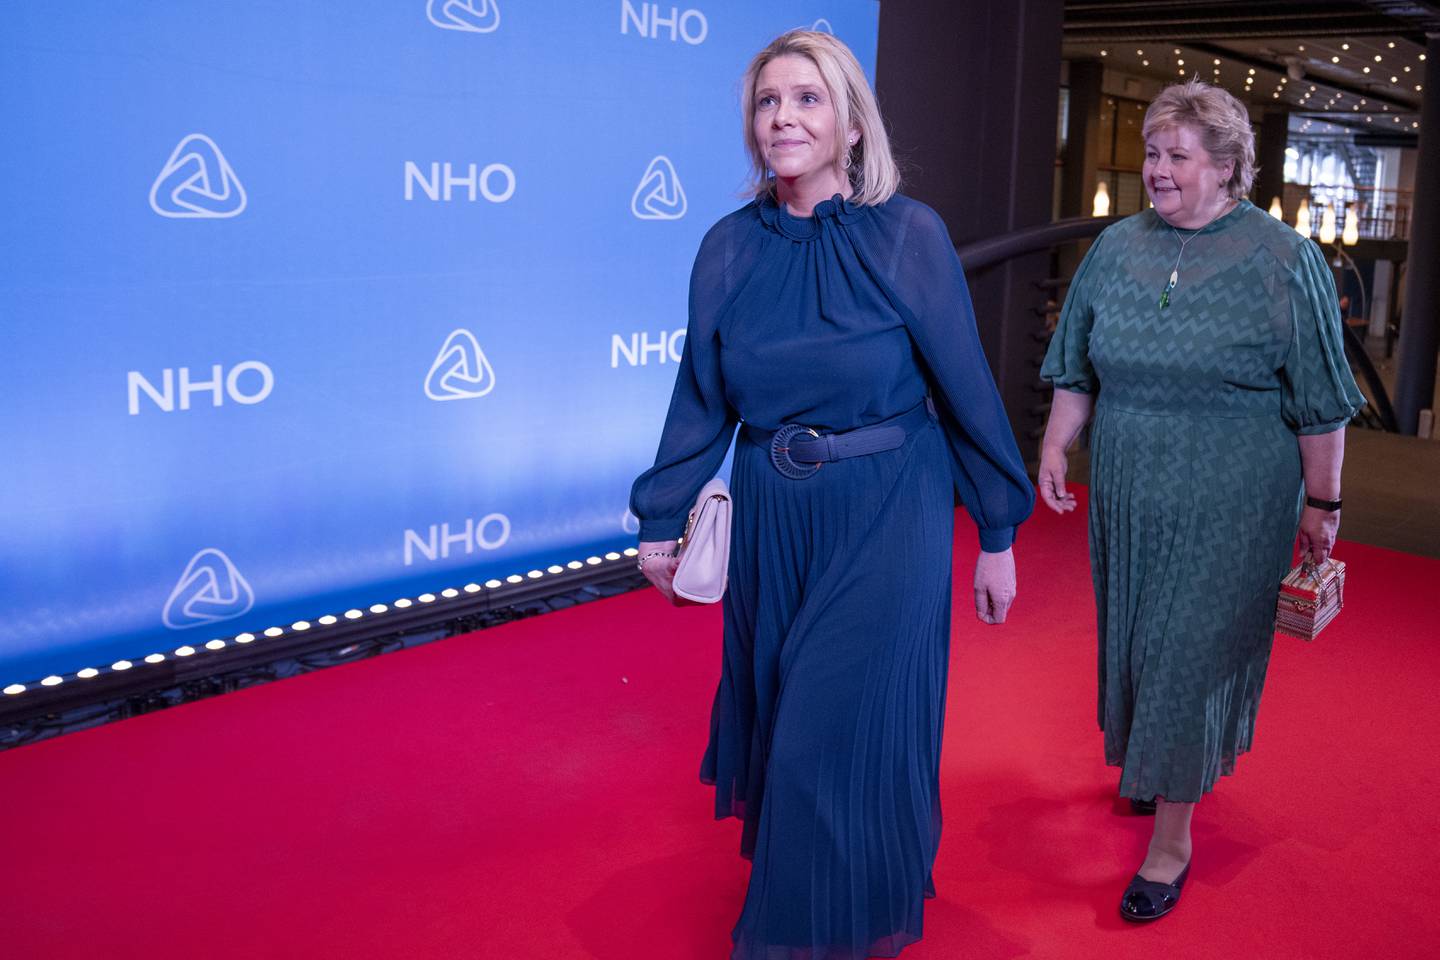 Oslo 20220512. 
Frp-leder Sylvi Listhaug og Høyre-leder Erna Solberg ankommer NHOs middag etter årskonferansen i Oslo Spektrum torsdag.
Foto: Javad Parsa / NTB